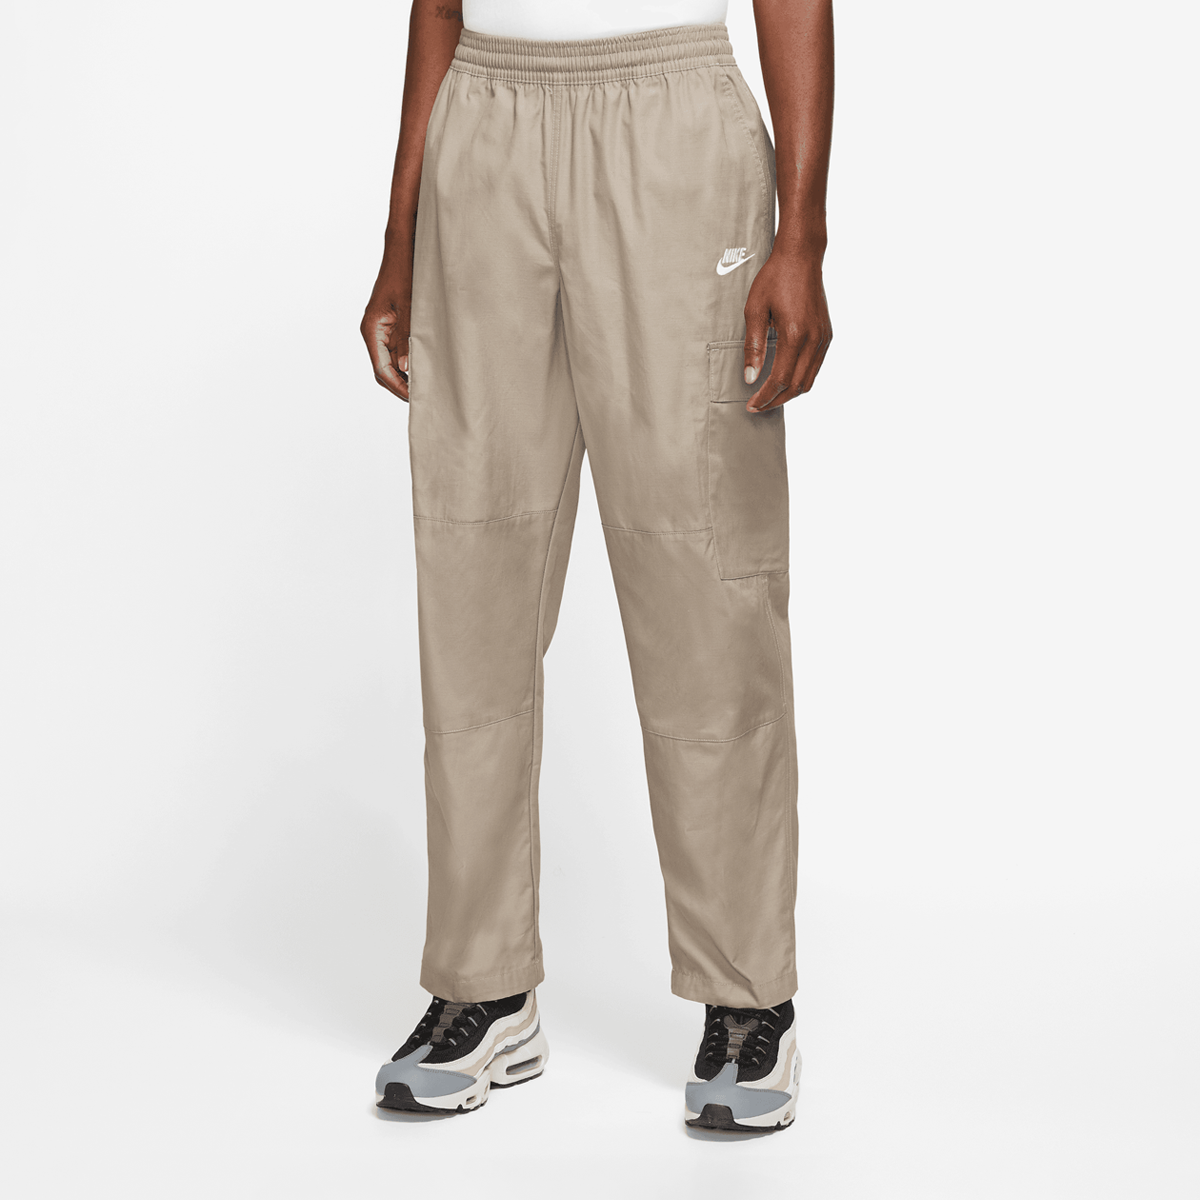 Club Woven Cargo Pants, NIKE, Apparel, khaki/white, taille: S